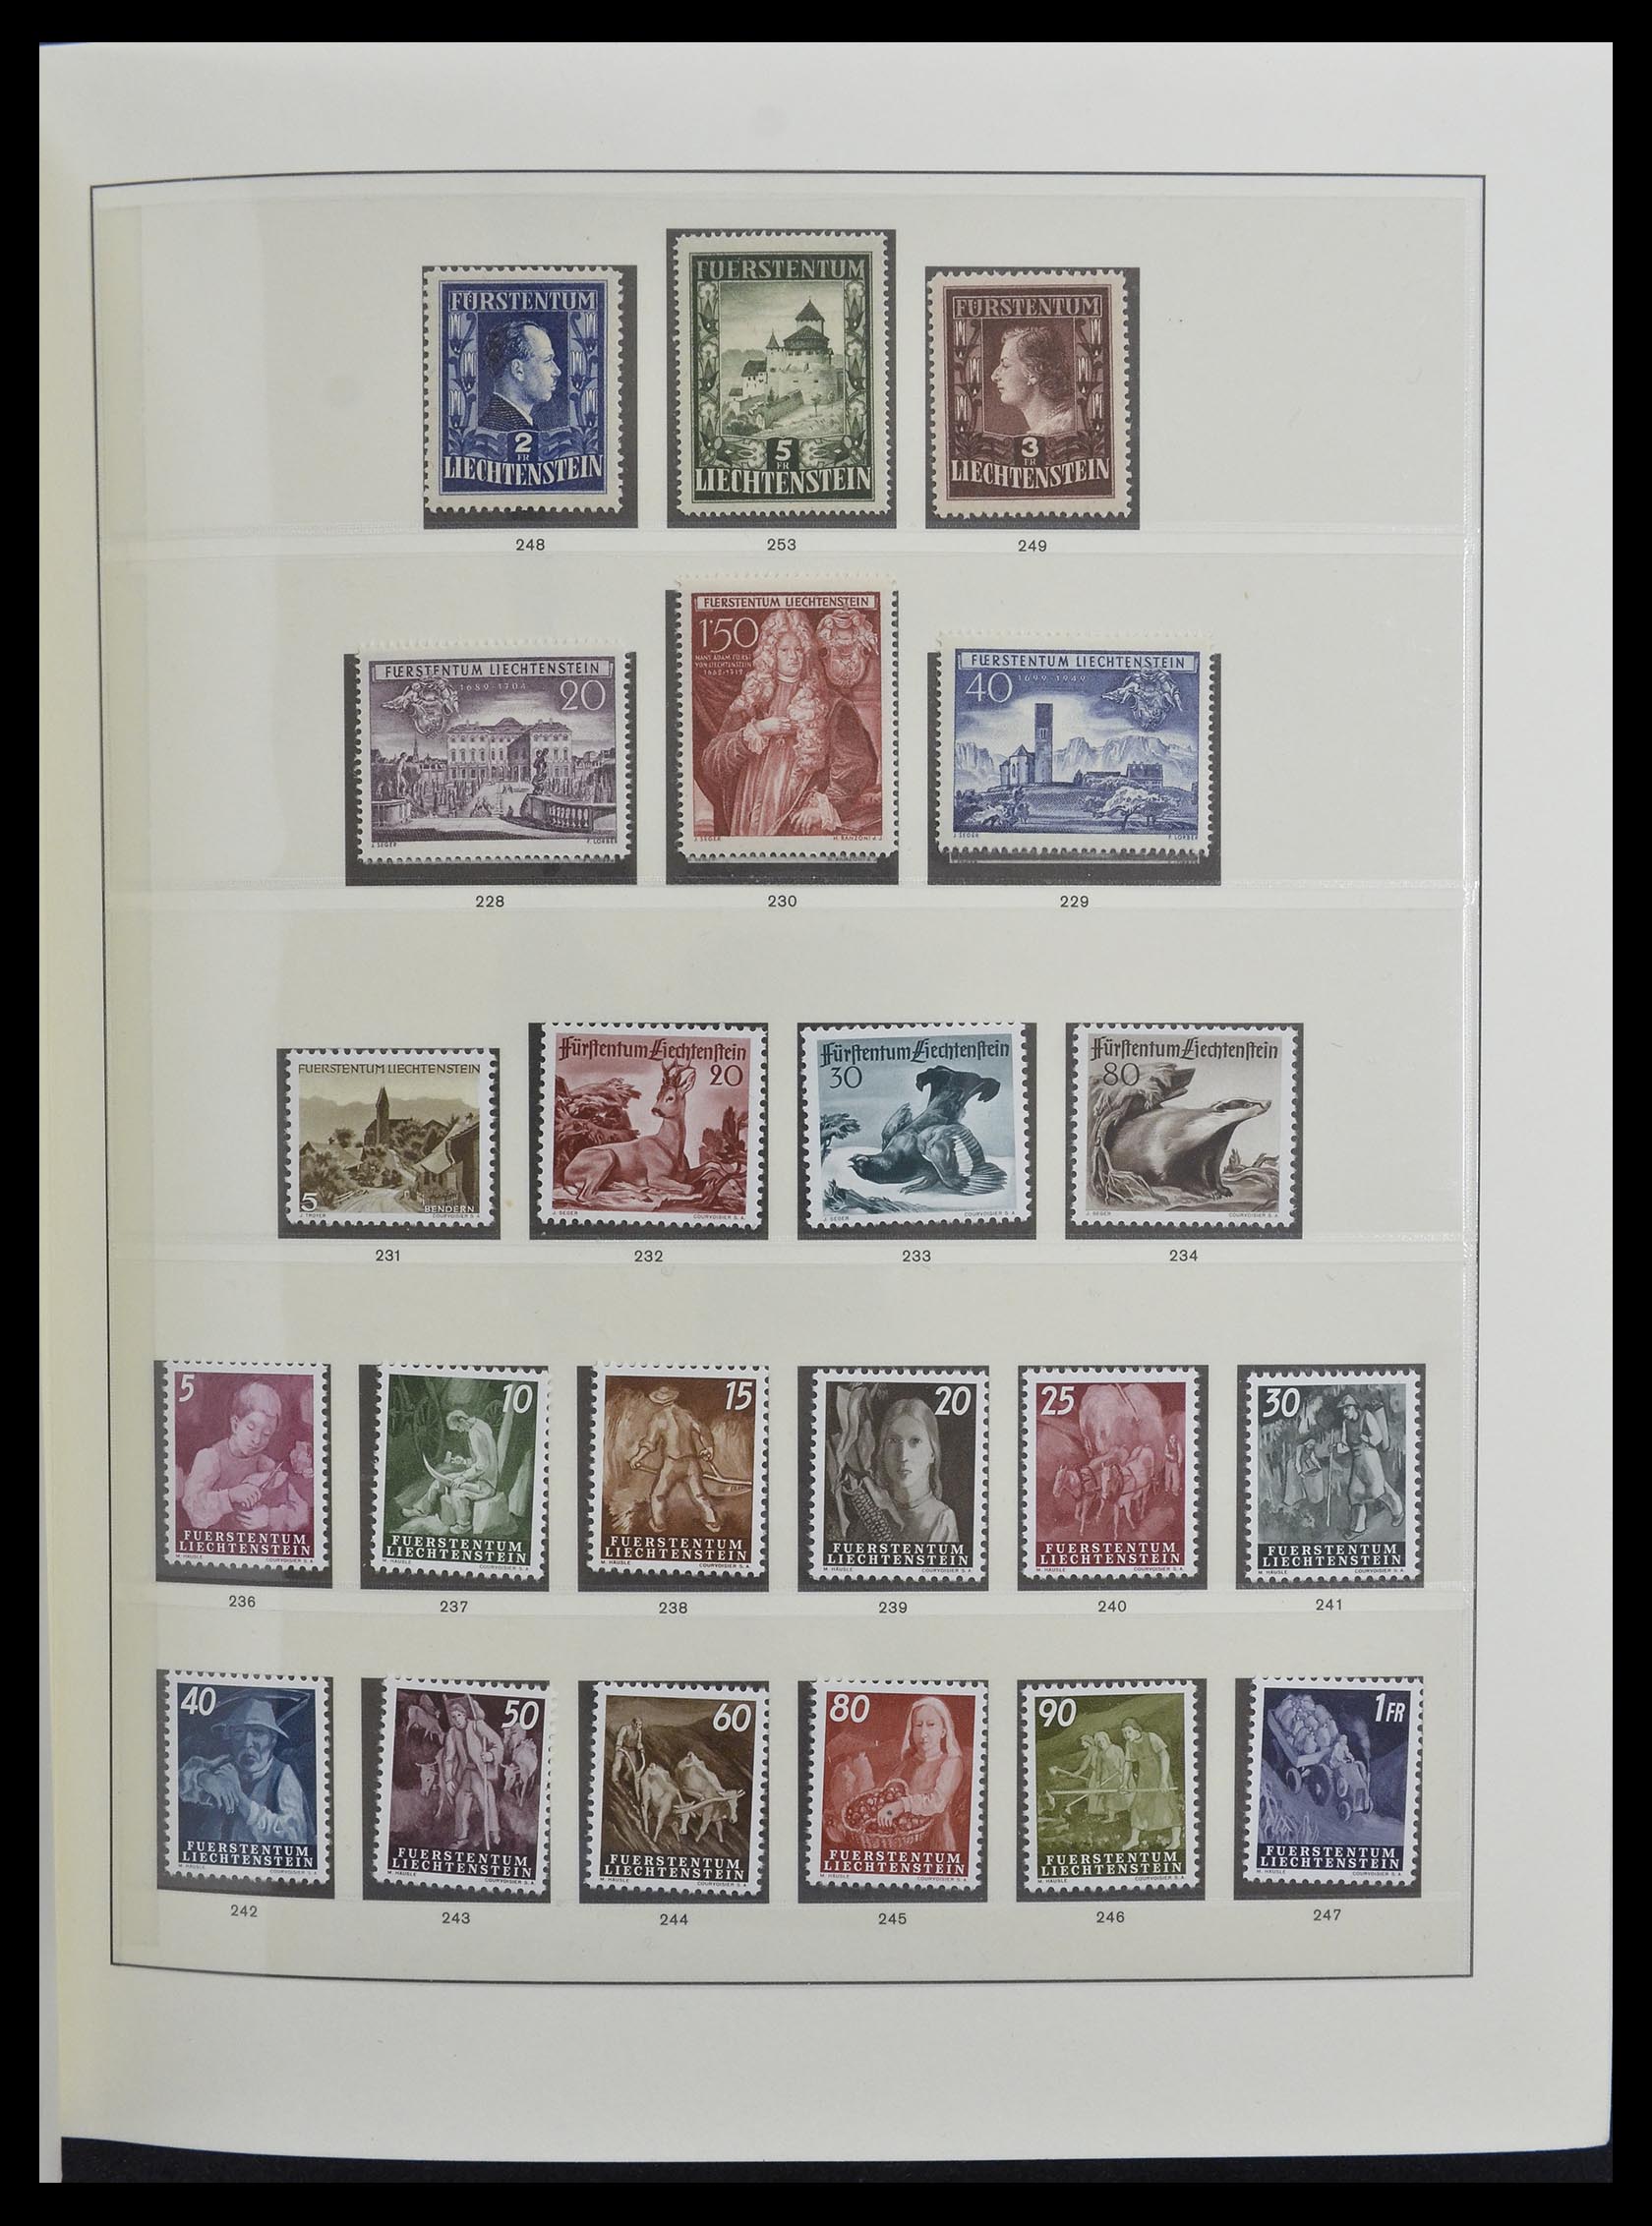 33140 012 - Stamp collection 33140 Liechtenstein 1912-1990.